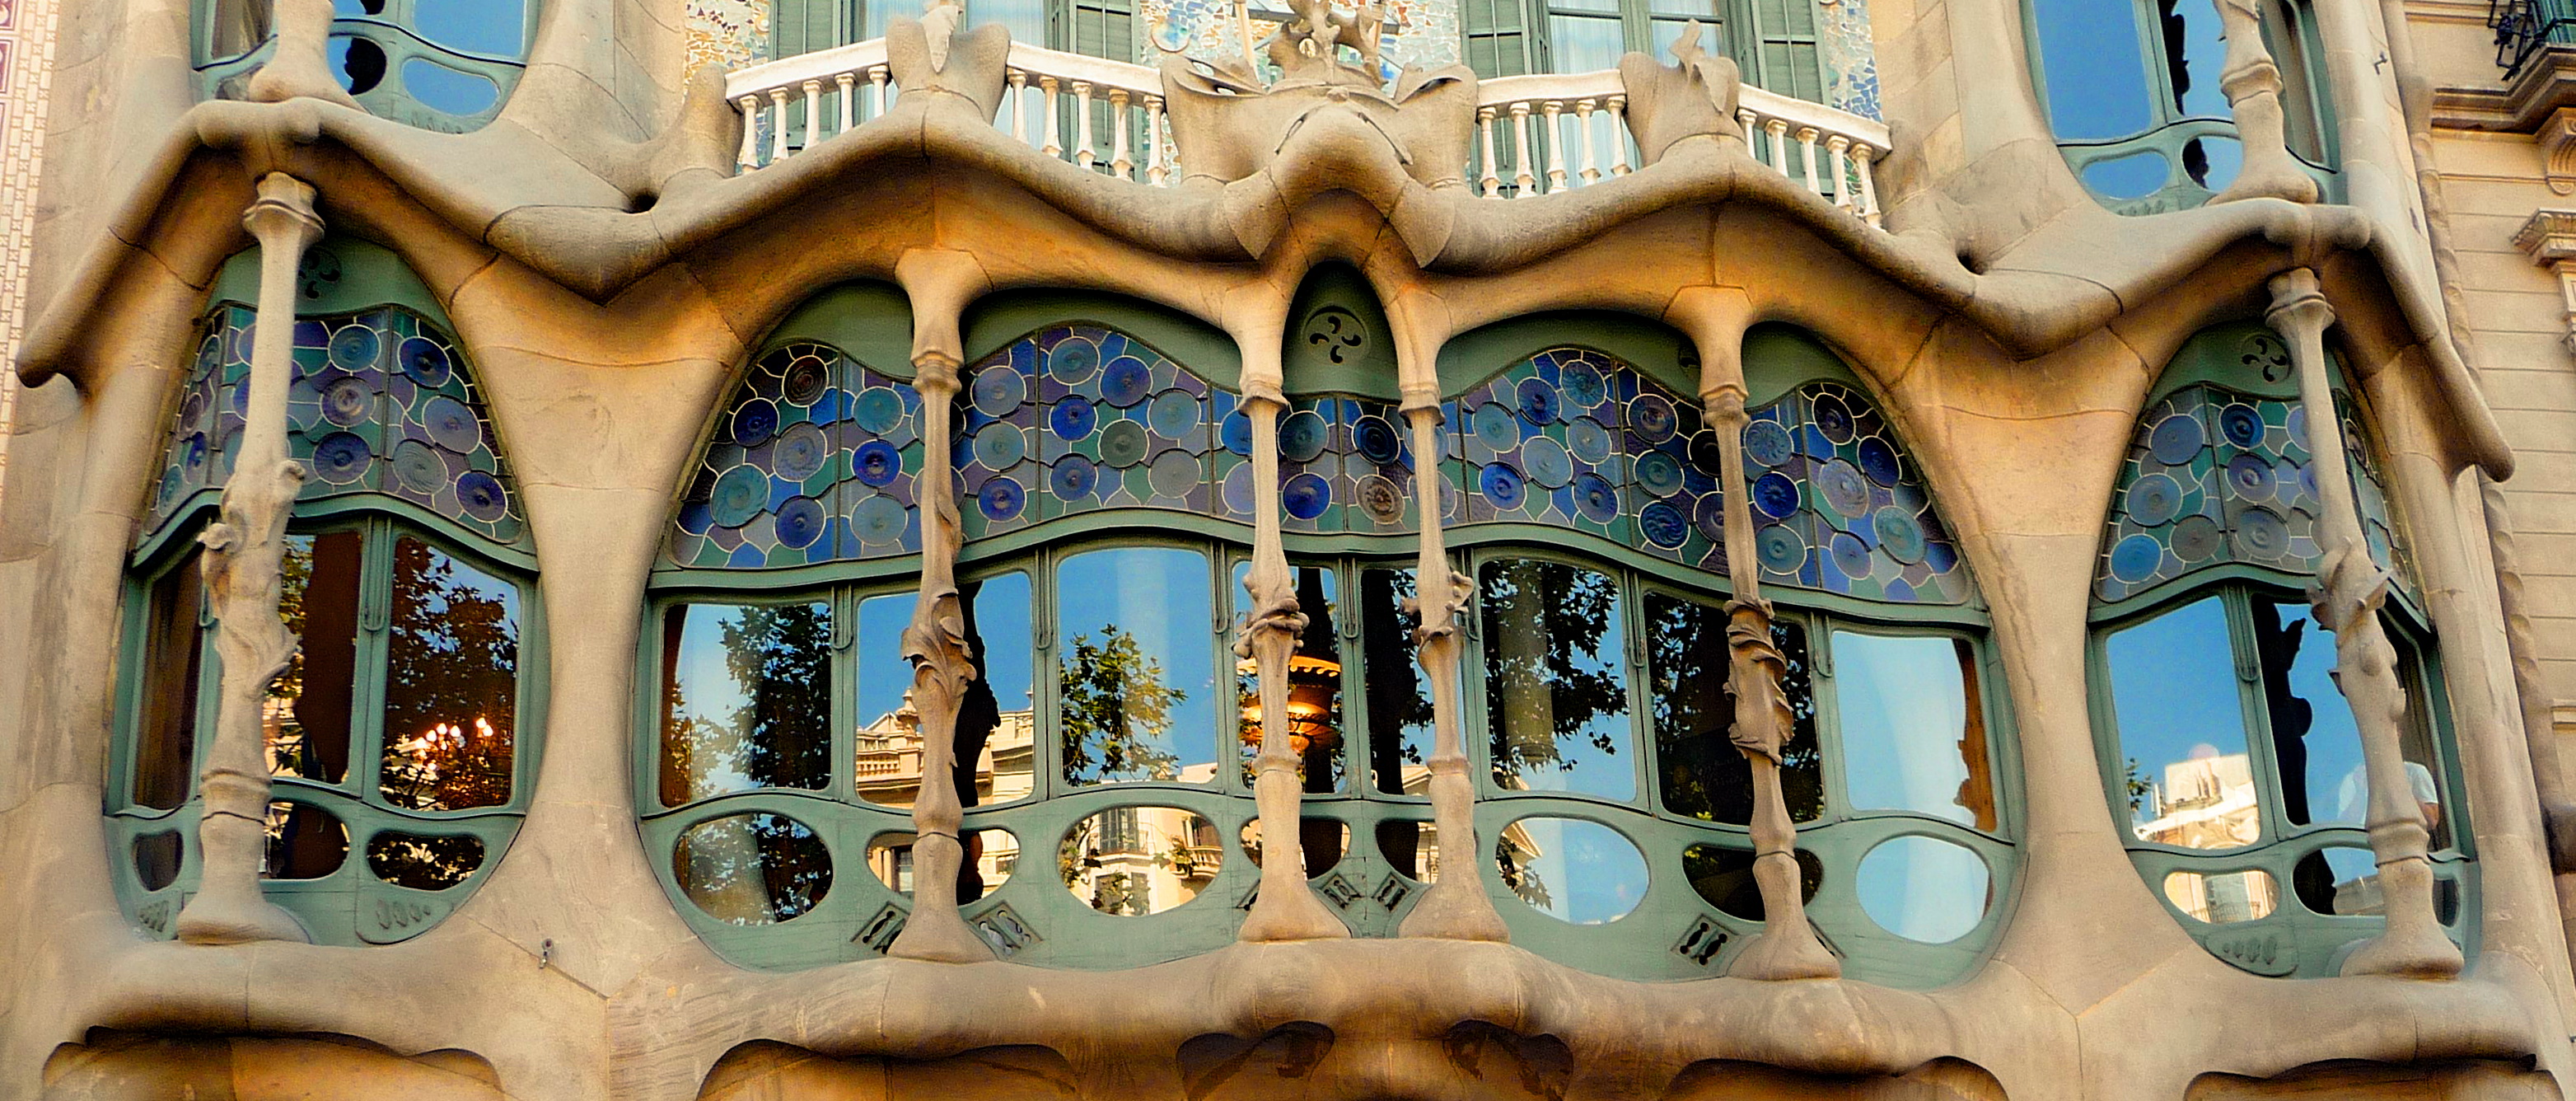 Casa Batlló espagne